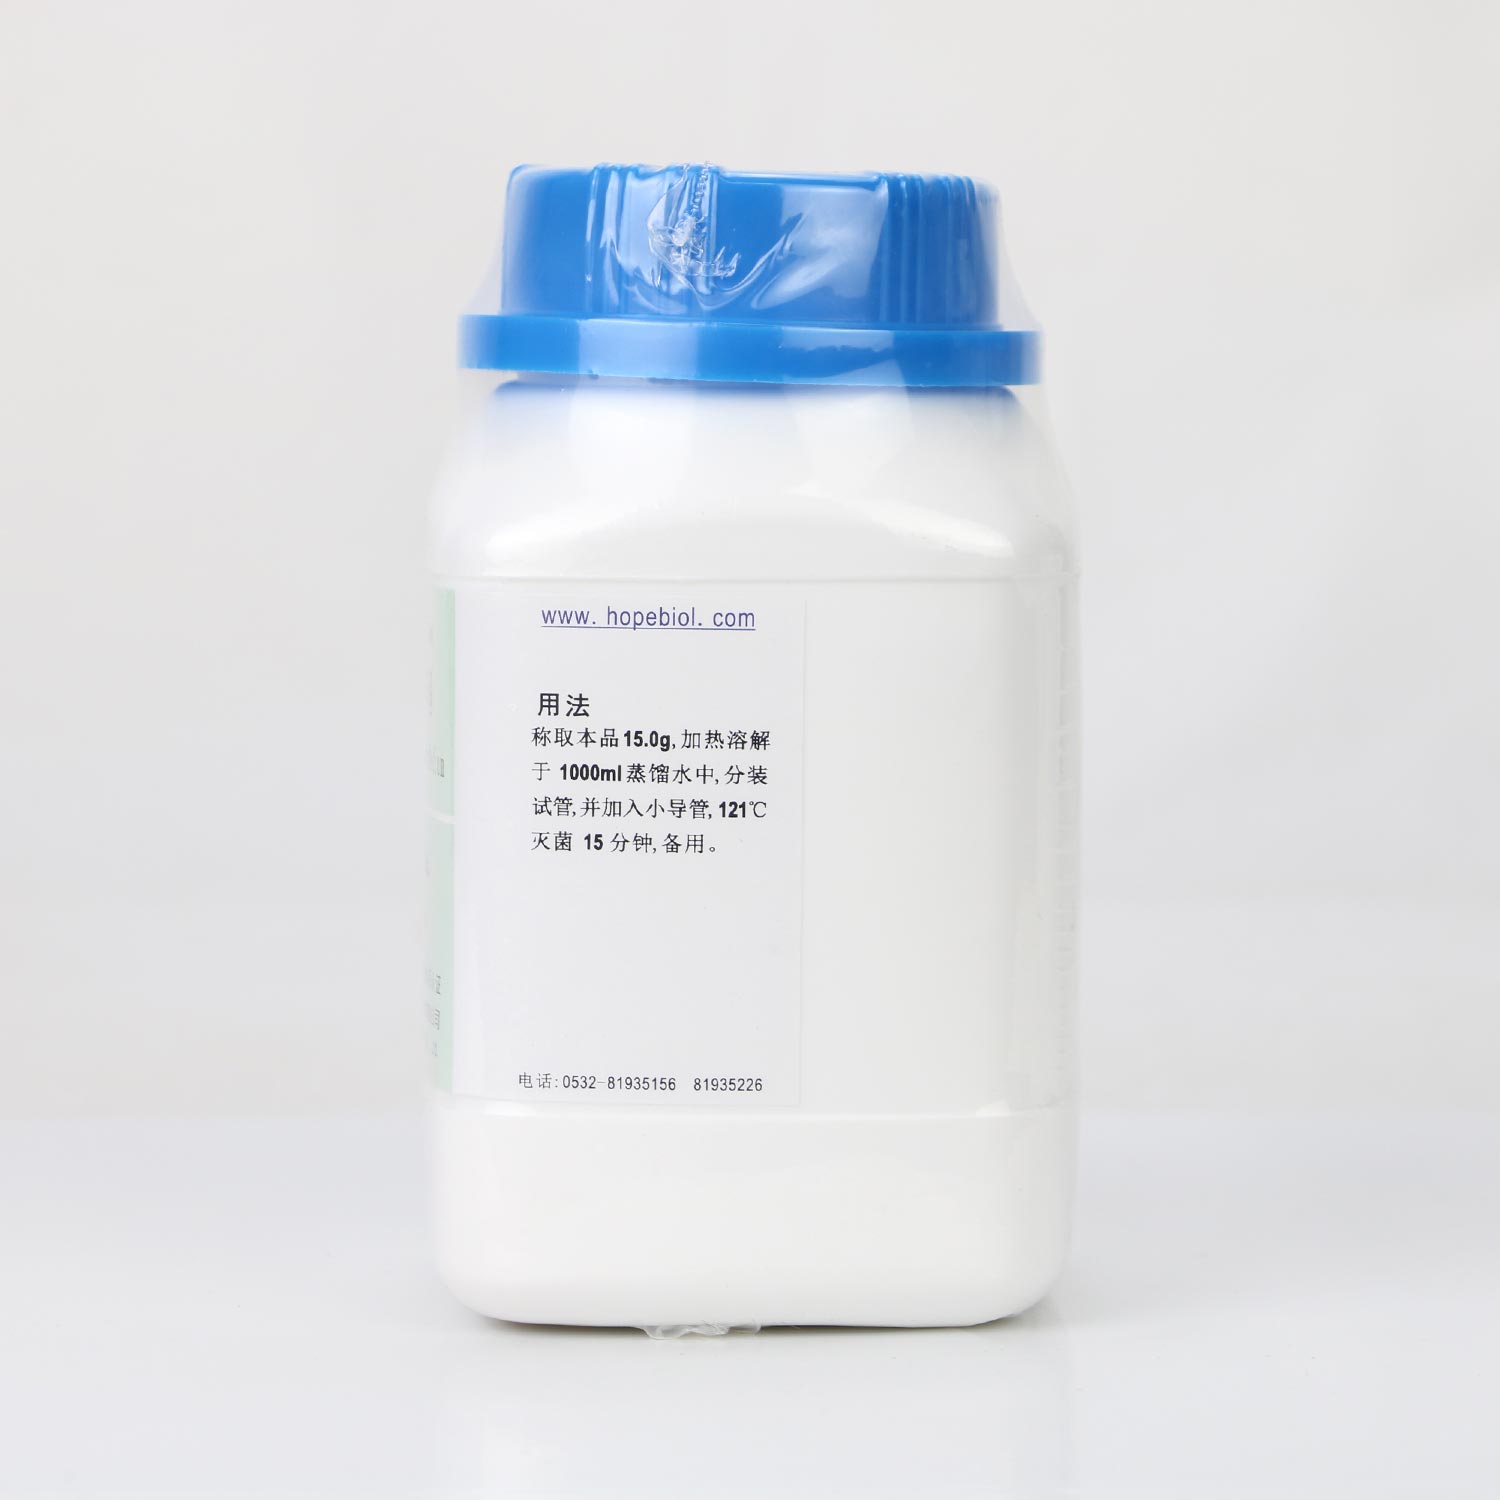 硝酸盐胨水培养基(中国药典)用法